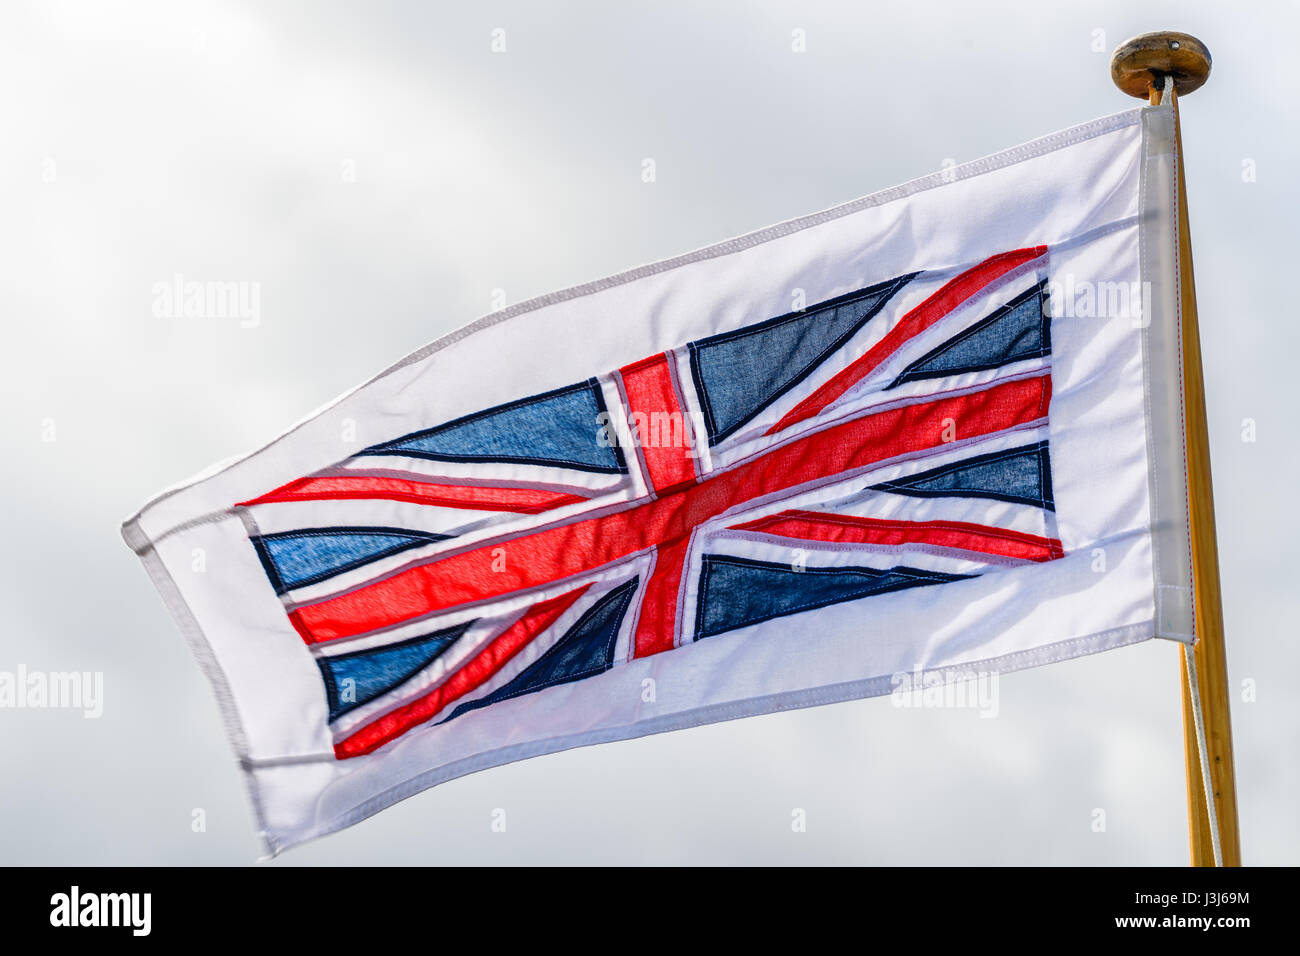 Der Union Jack Flagge, Symbol der Vereinigtes Königreich von Großbritannien und Irland Northen, erschien erstmals im Jahre 1606. Stockfoto